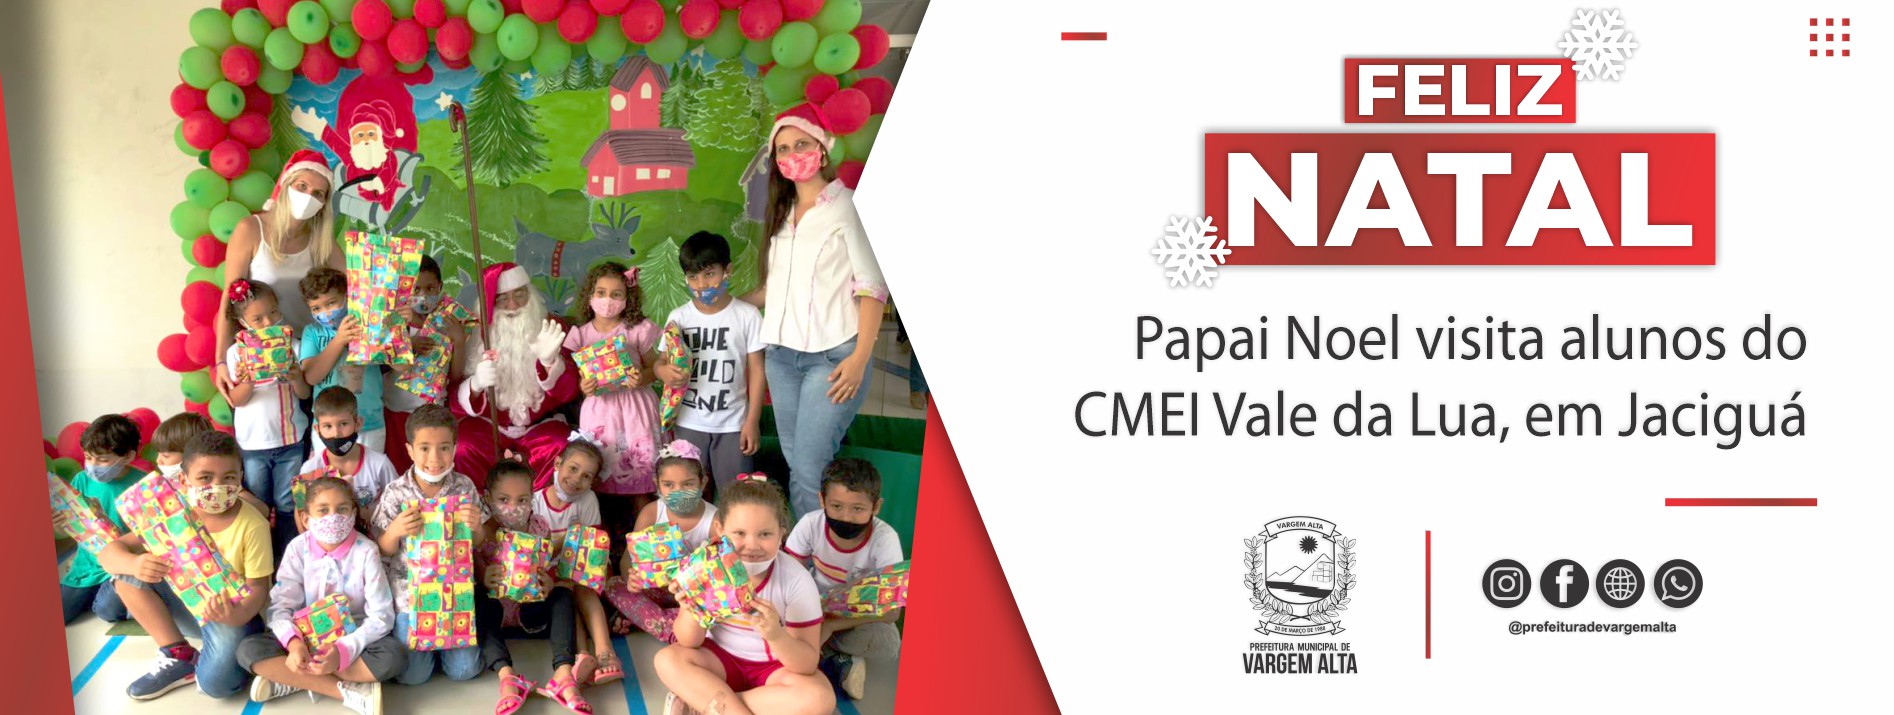 Papai Noel visita alunos do CMEI Vale da Lua, em Jaciguá